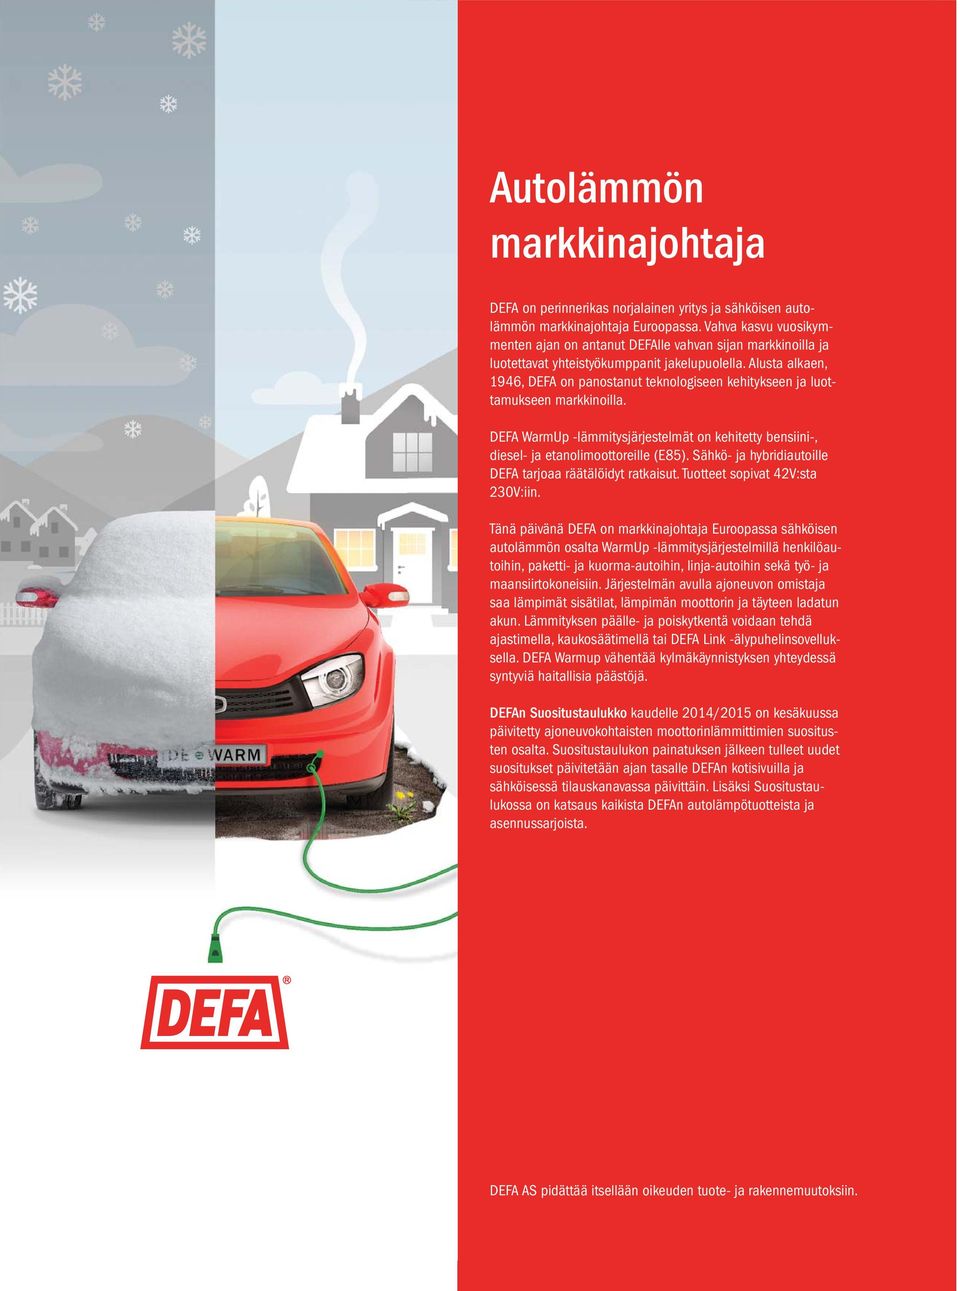 Alusta alkaen, 1946, DEFA on panostanut teknologiseen kehitykseen ja luottamukseen markkinoilla. DEFA WarmUp -lämmitysjärjestelmät on kehitetty bensiini-, diesel- ja etanolimoottoreille (E85).